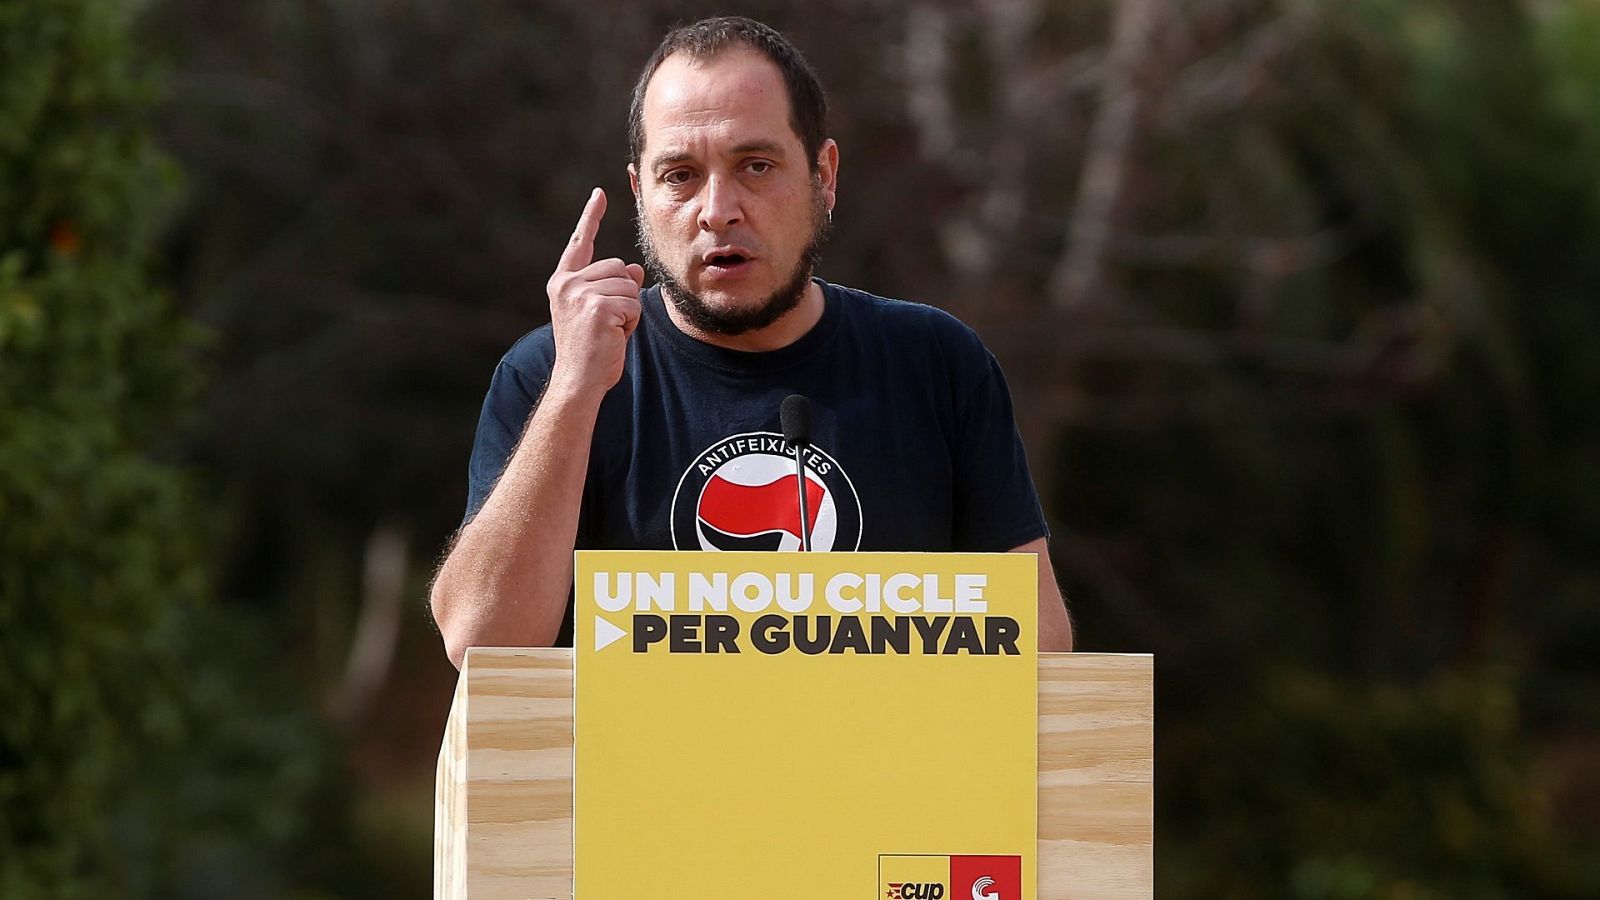 El ex diputado de la CUP , David Fernández participa en un acto electoral